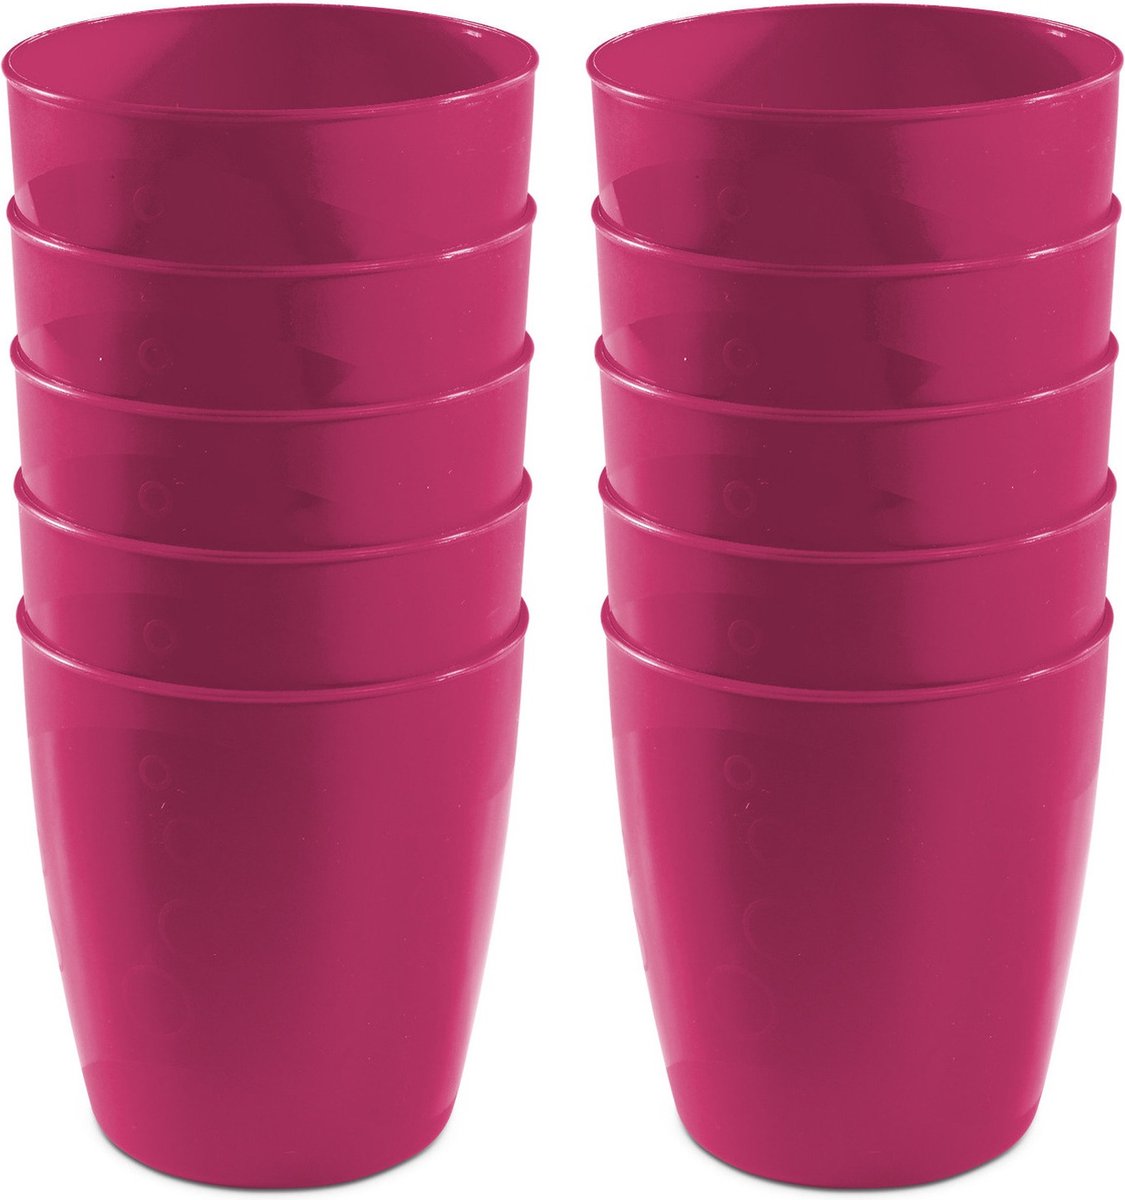 30x drinkbekers van kunststof 300 ml in het roze - Limonade bekers - Campingservies/picknickservies